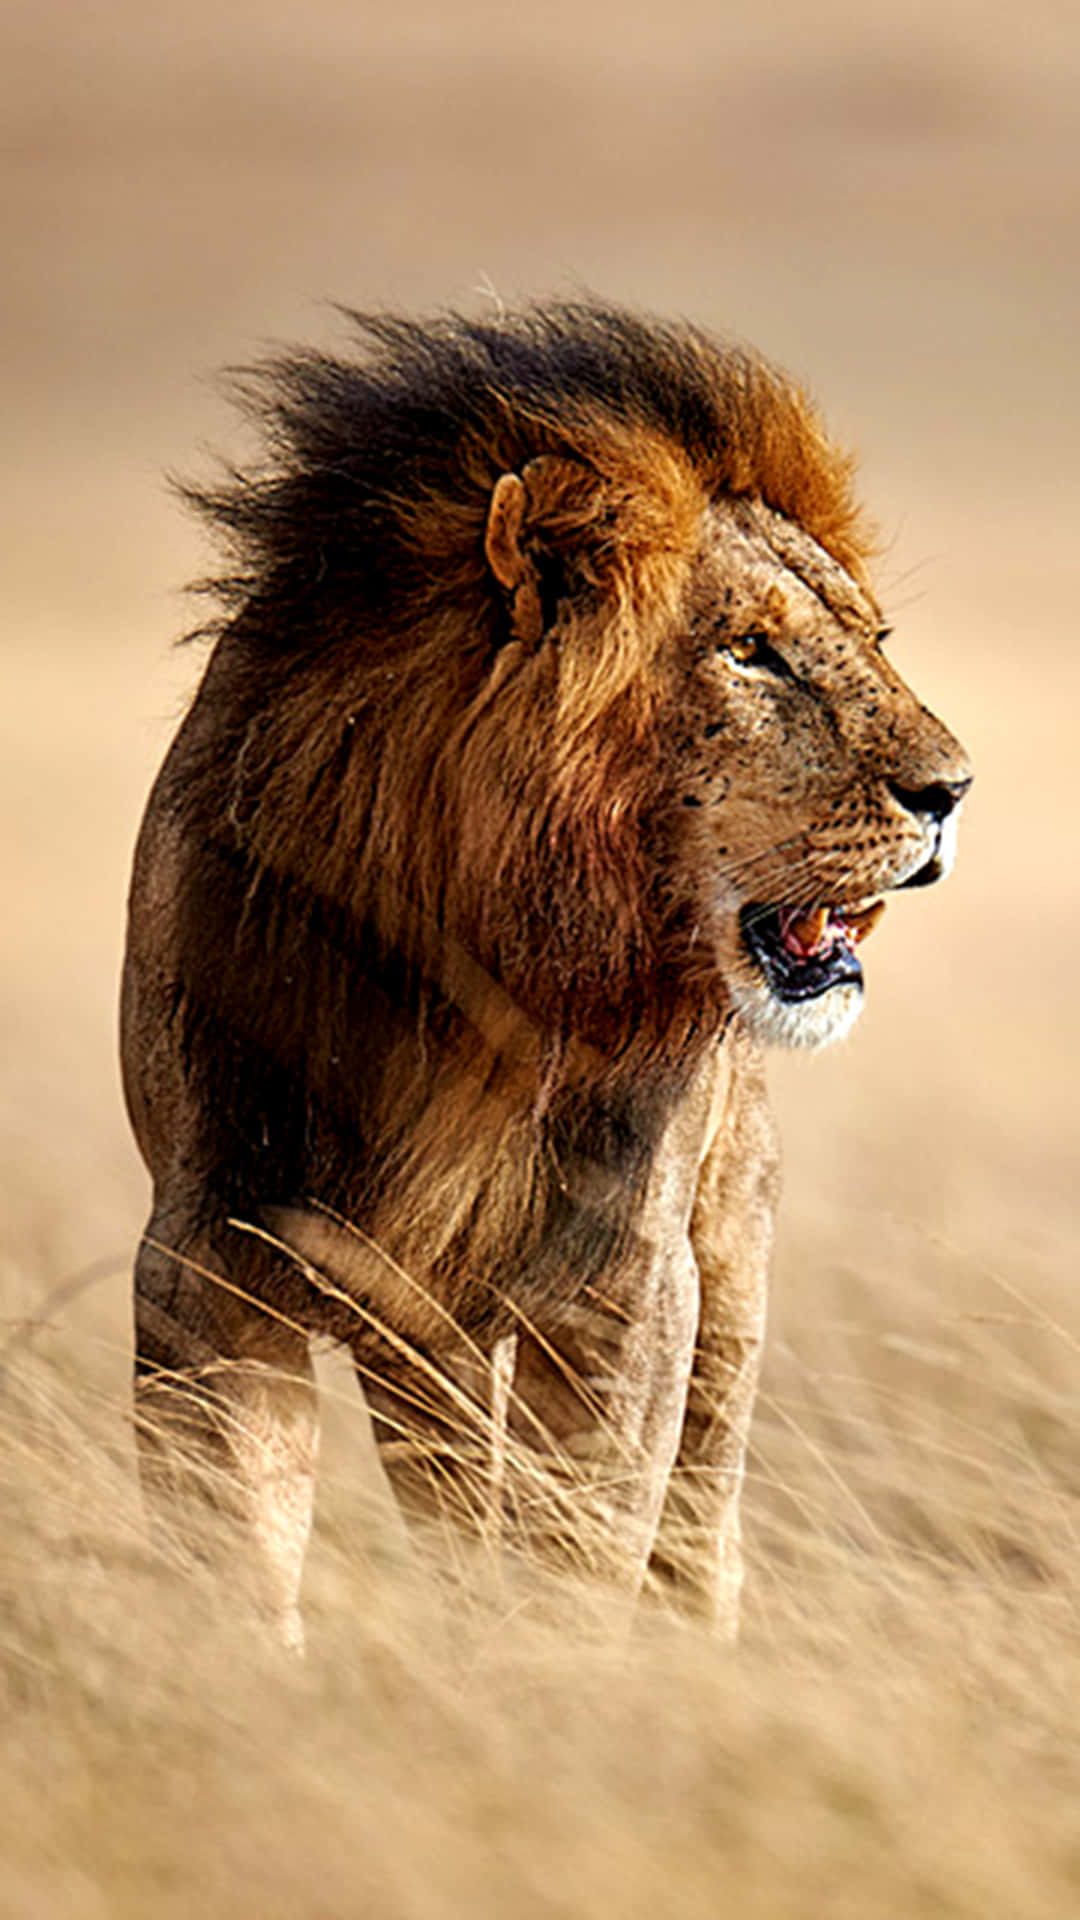 Roaring Lion In The Field Wallpaper